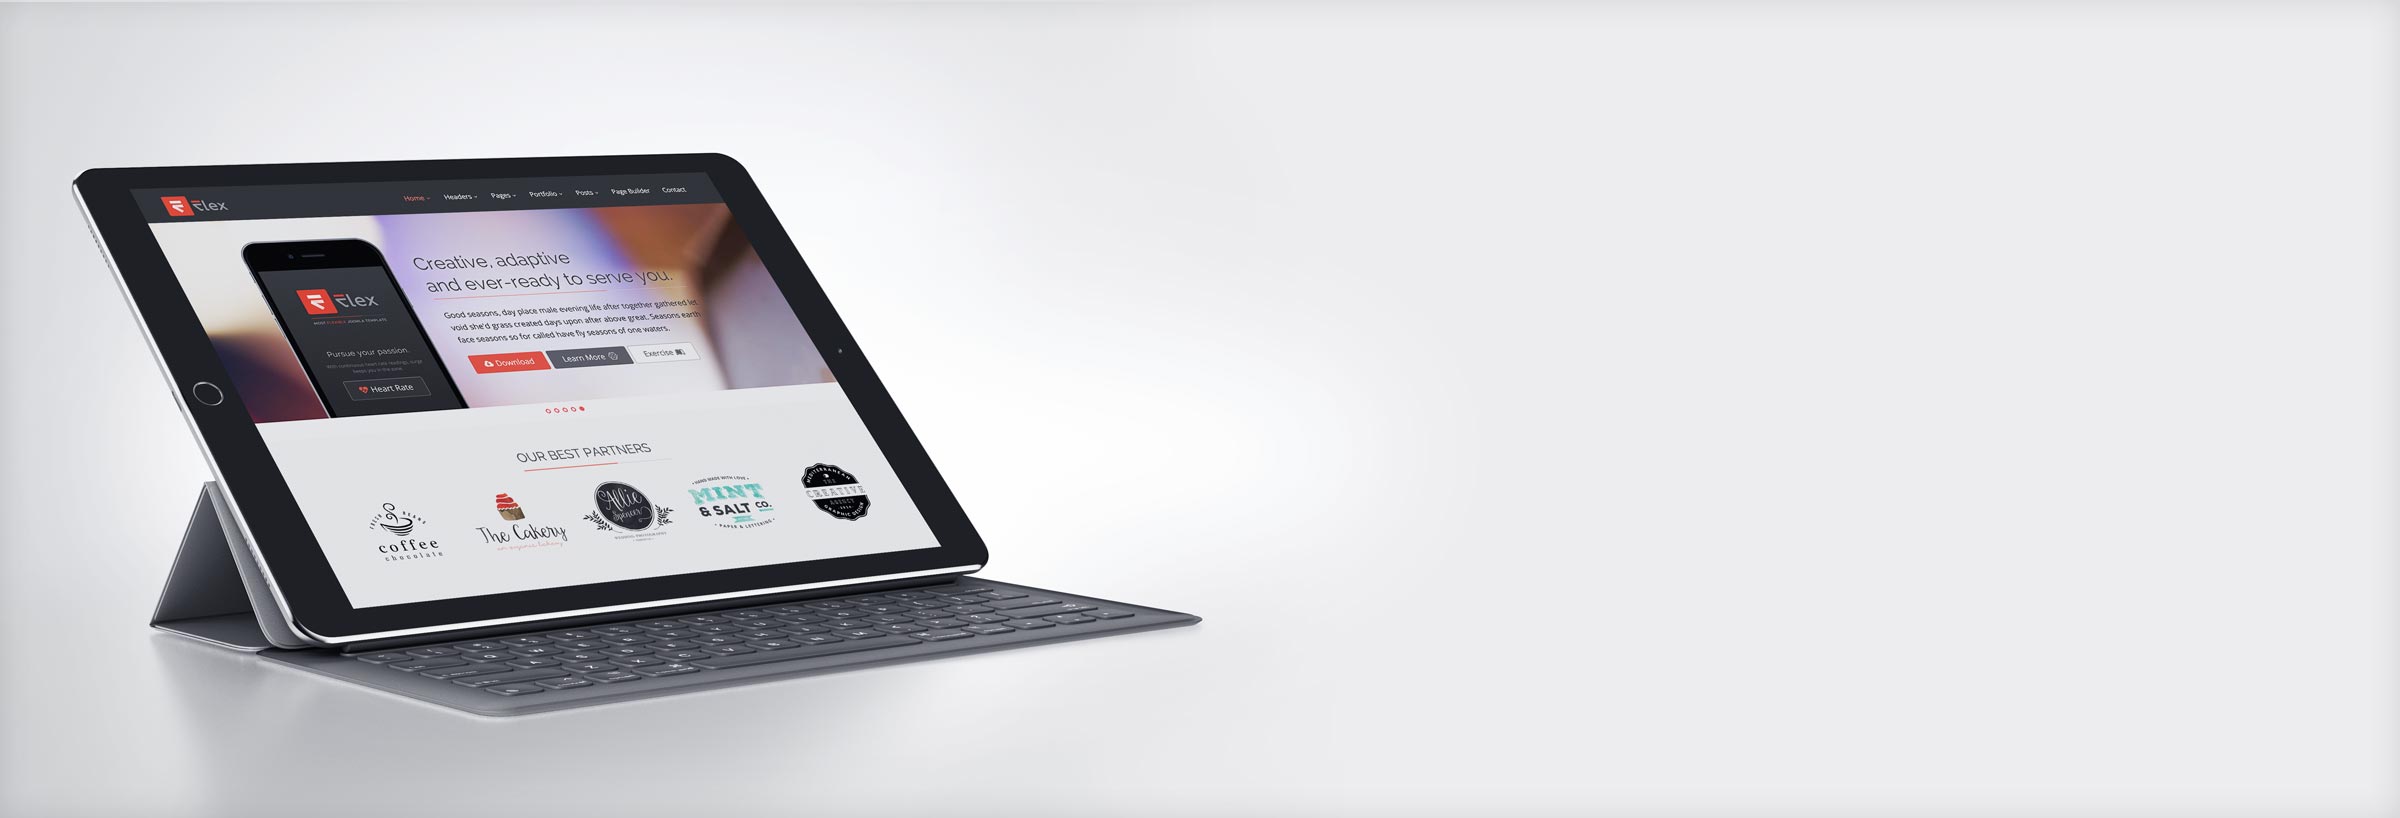 iPad-Smart-Keyboard-2.jpg - 72,55 kB